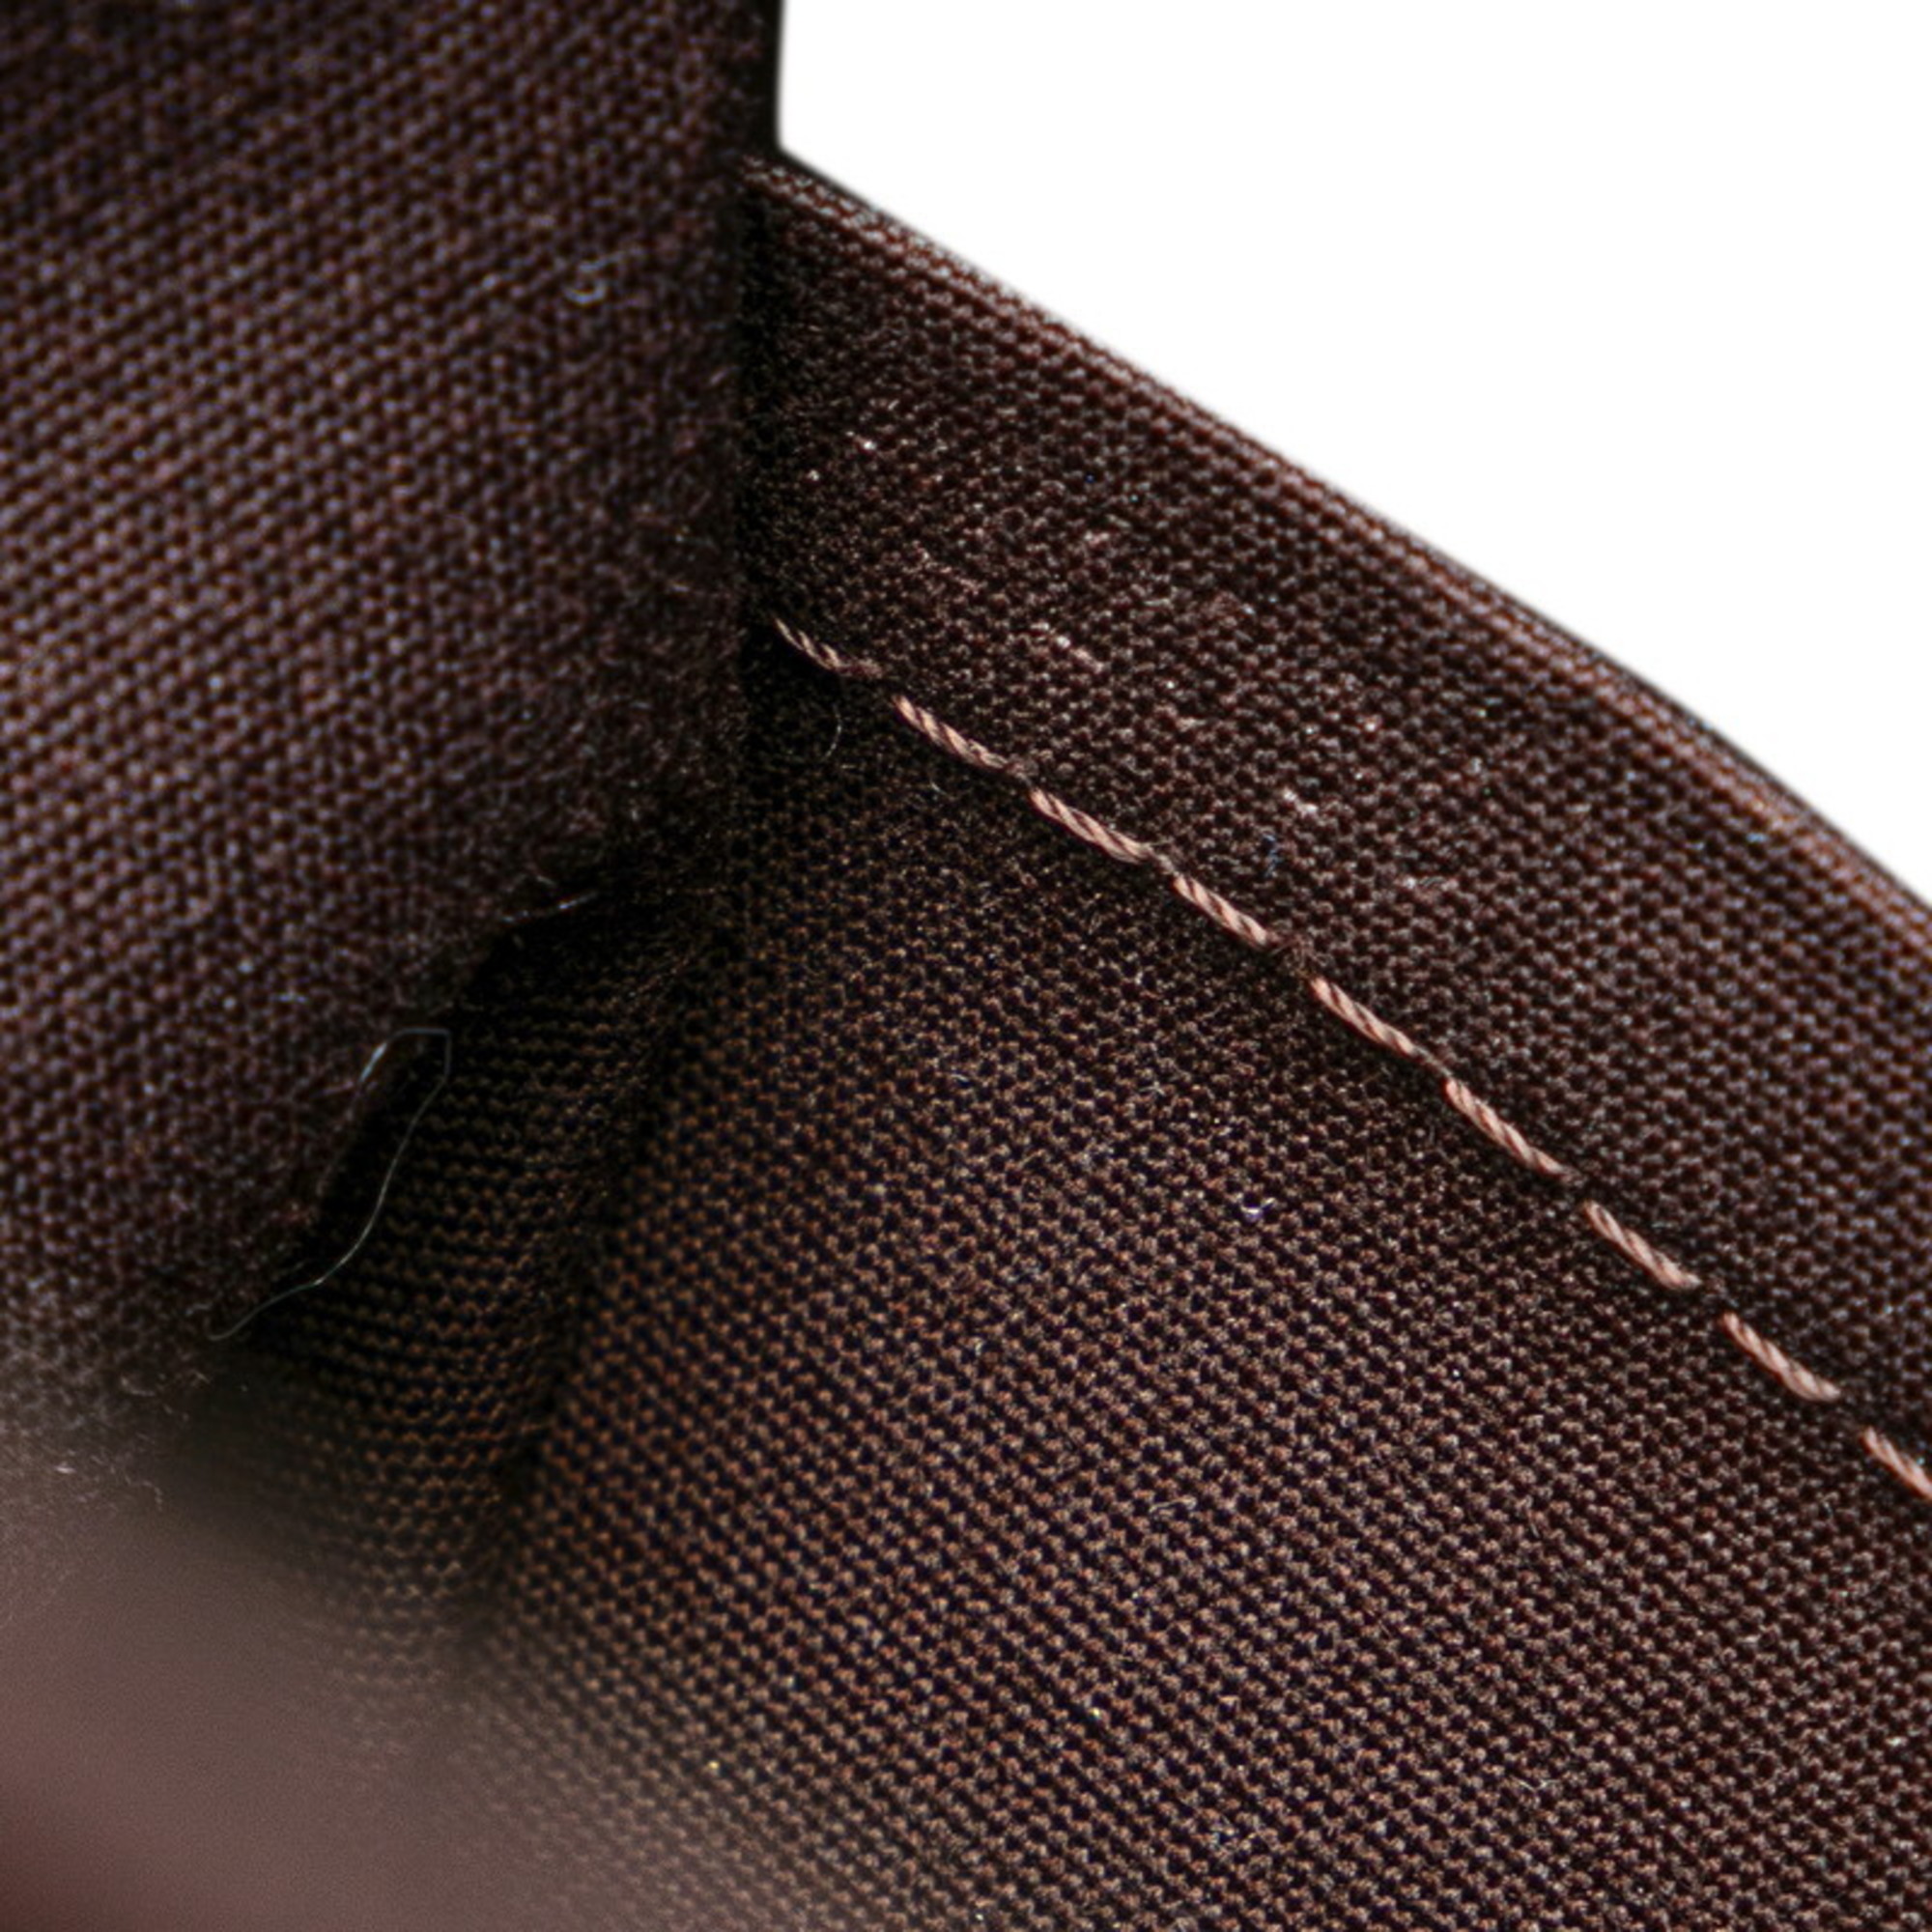 Louis Vuitton Monogram Vernis Blended Wood Tote Bag M91994 Amaranth Purple Patent Leather Women's LOUIS VUITTON